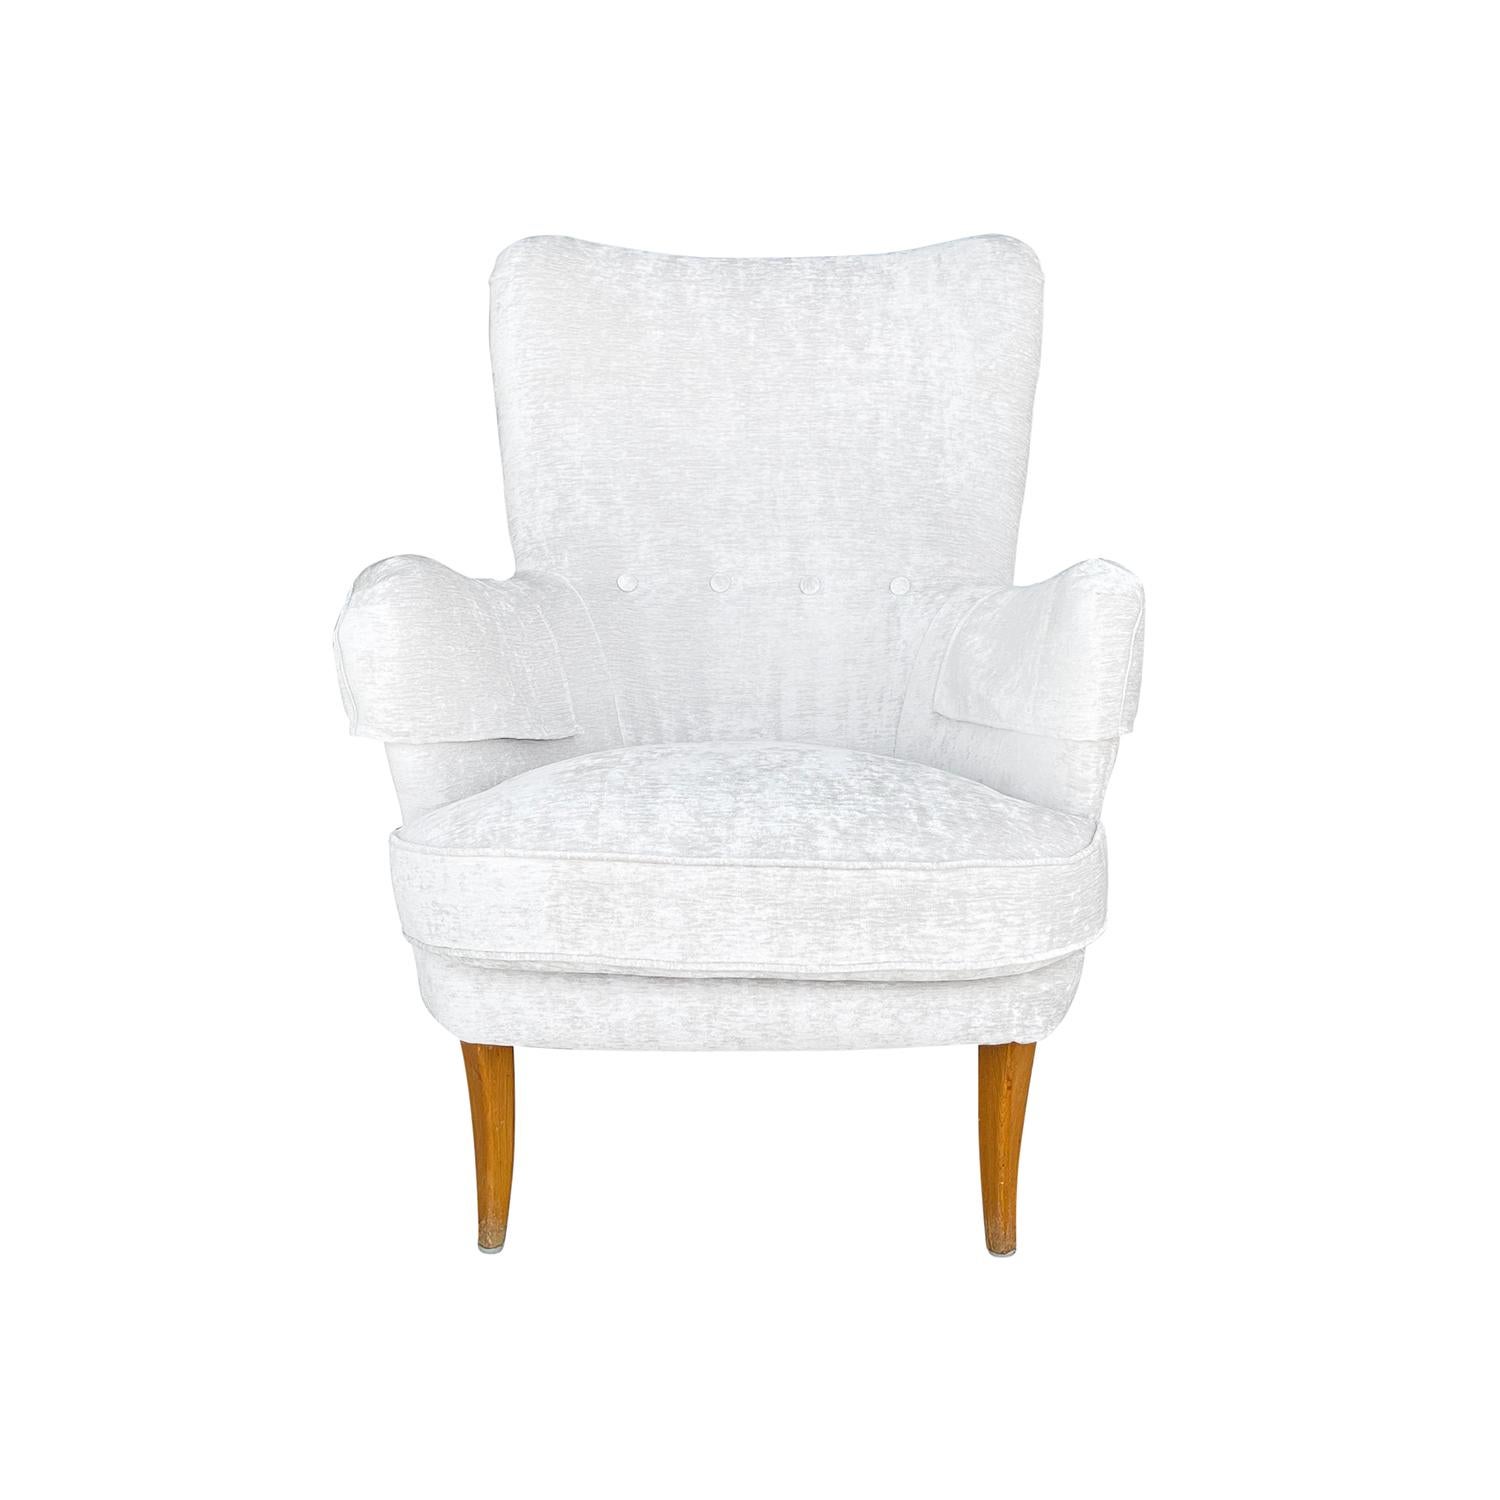 Ein weiß-grauer, anonymer schwedischer Sessel aus der Jahrhundertmitte mit zwei Kissen, entworfen von Carl Malmsten, in gutem Zustand. Die Rückenlehne des skandinavischen Beistellstuhls Little Furulid ist leicht geschwungen, die Armlehnen sind